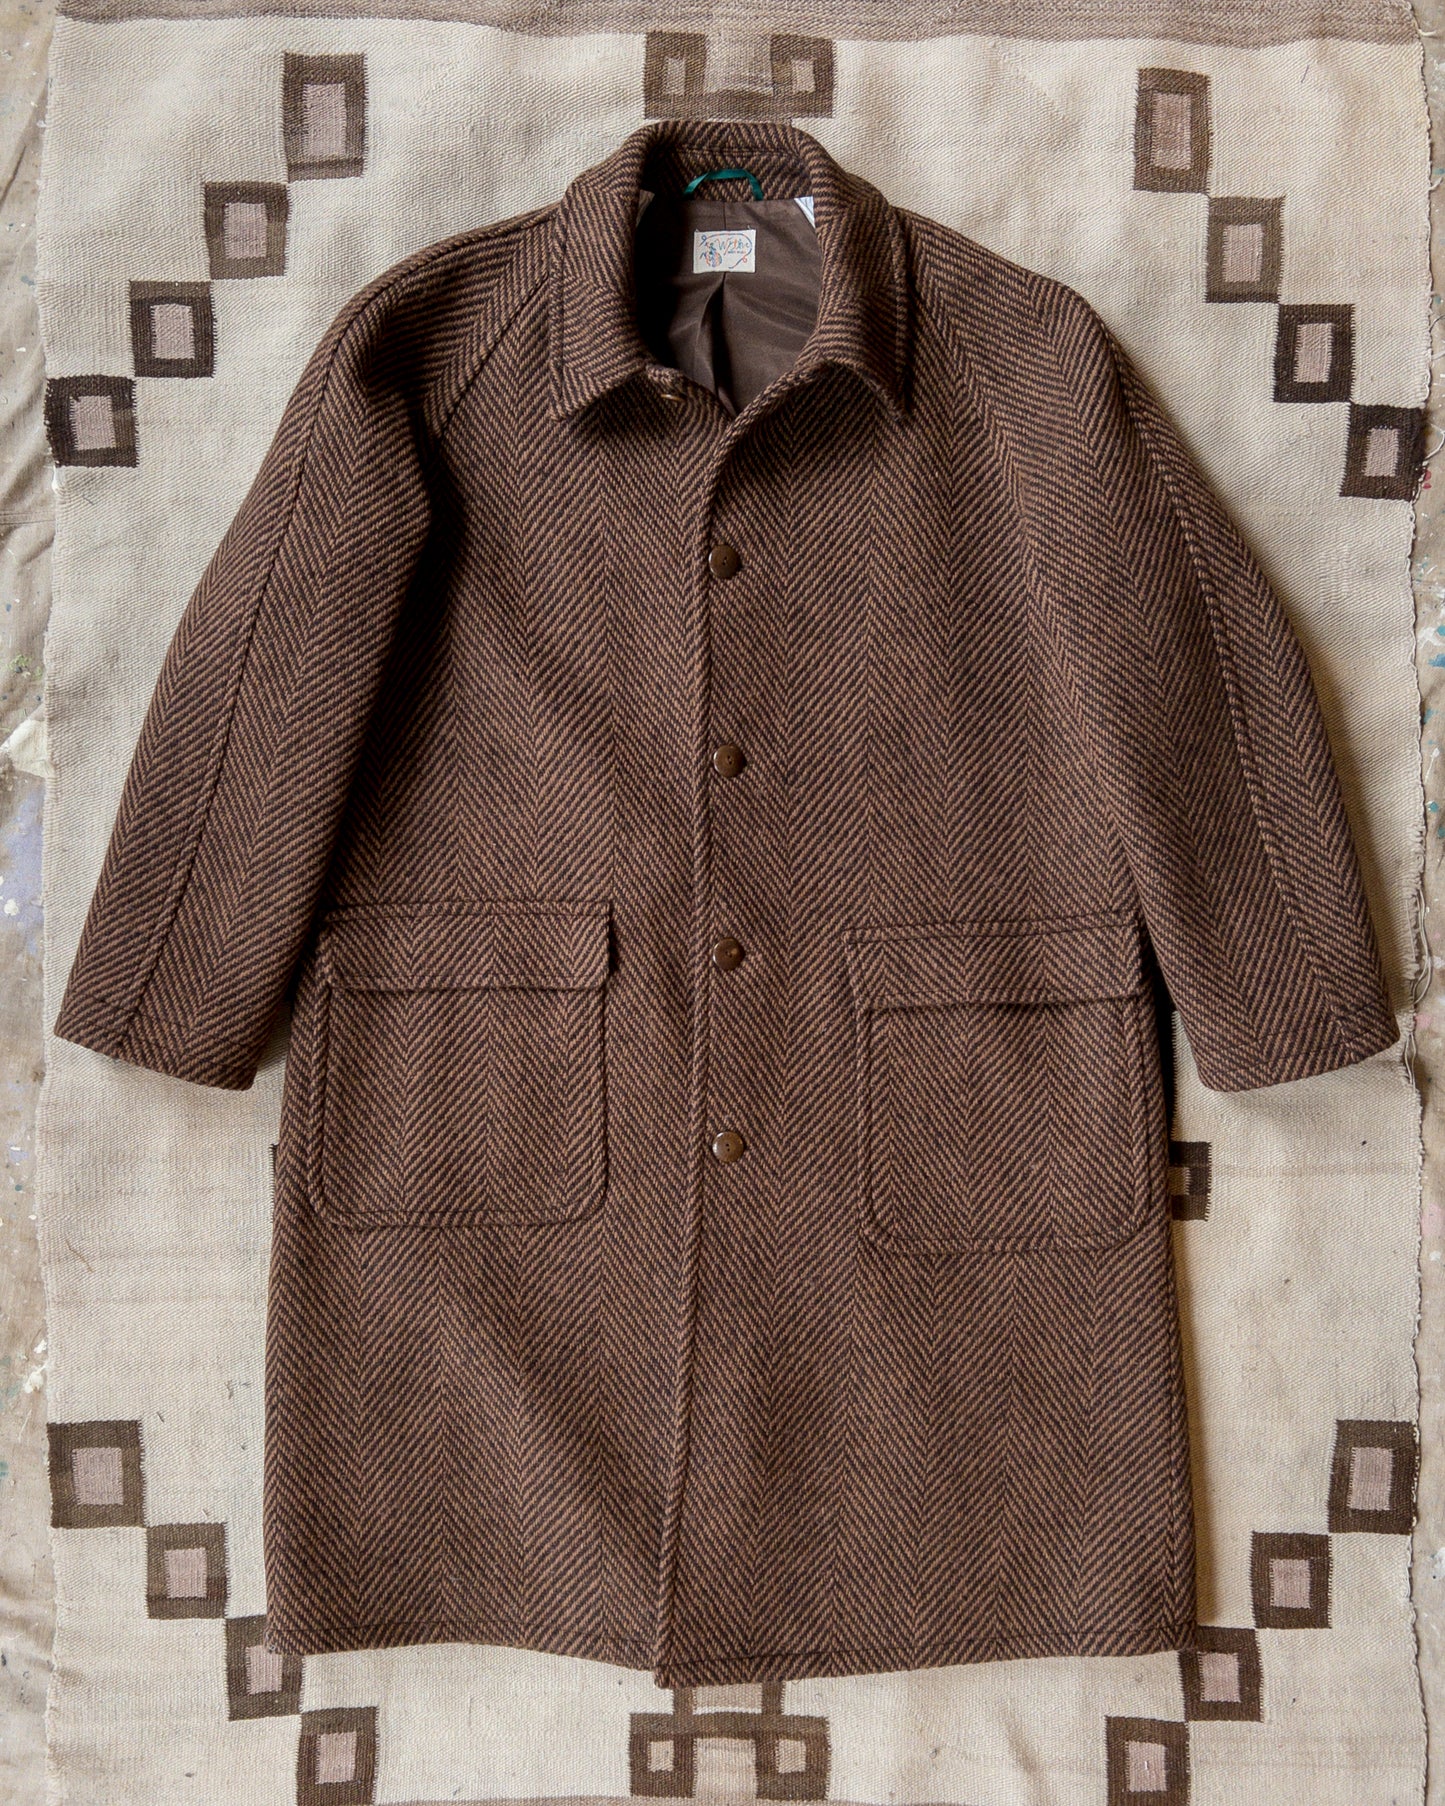 Raglan Wool Overcoat - Rust and Dark Brown Herringbone